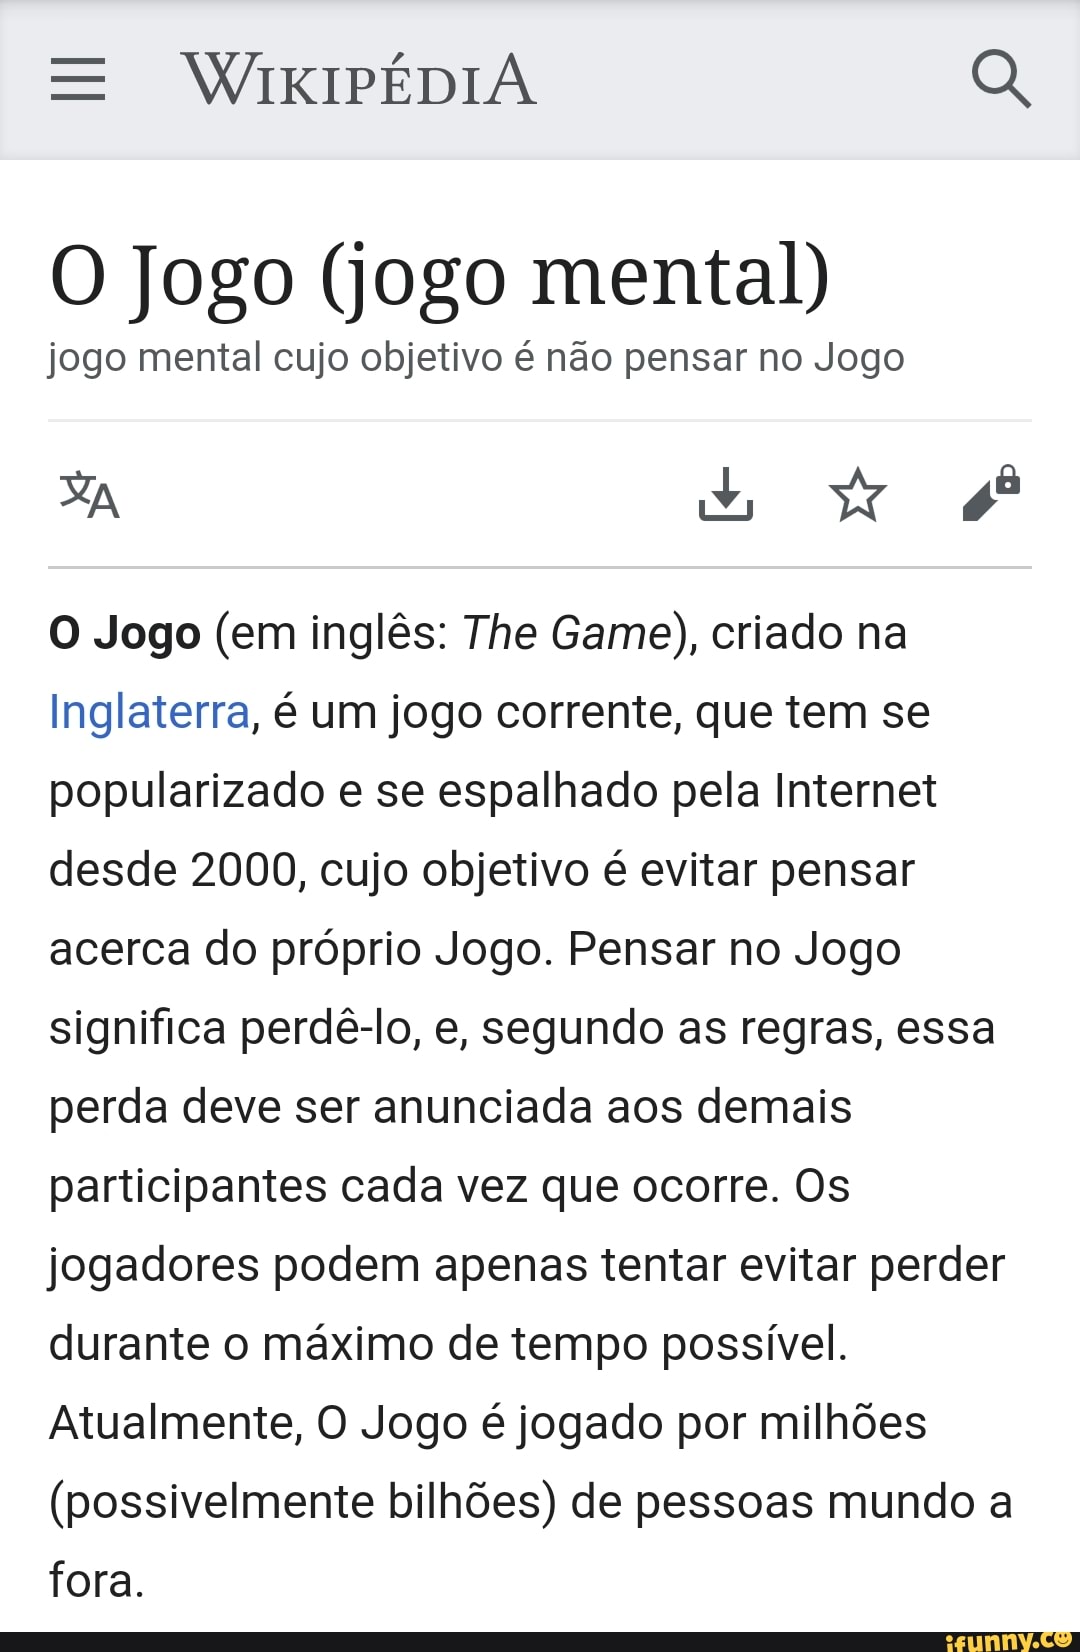 O Jogo - Wikipedia